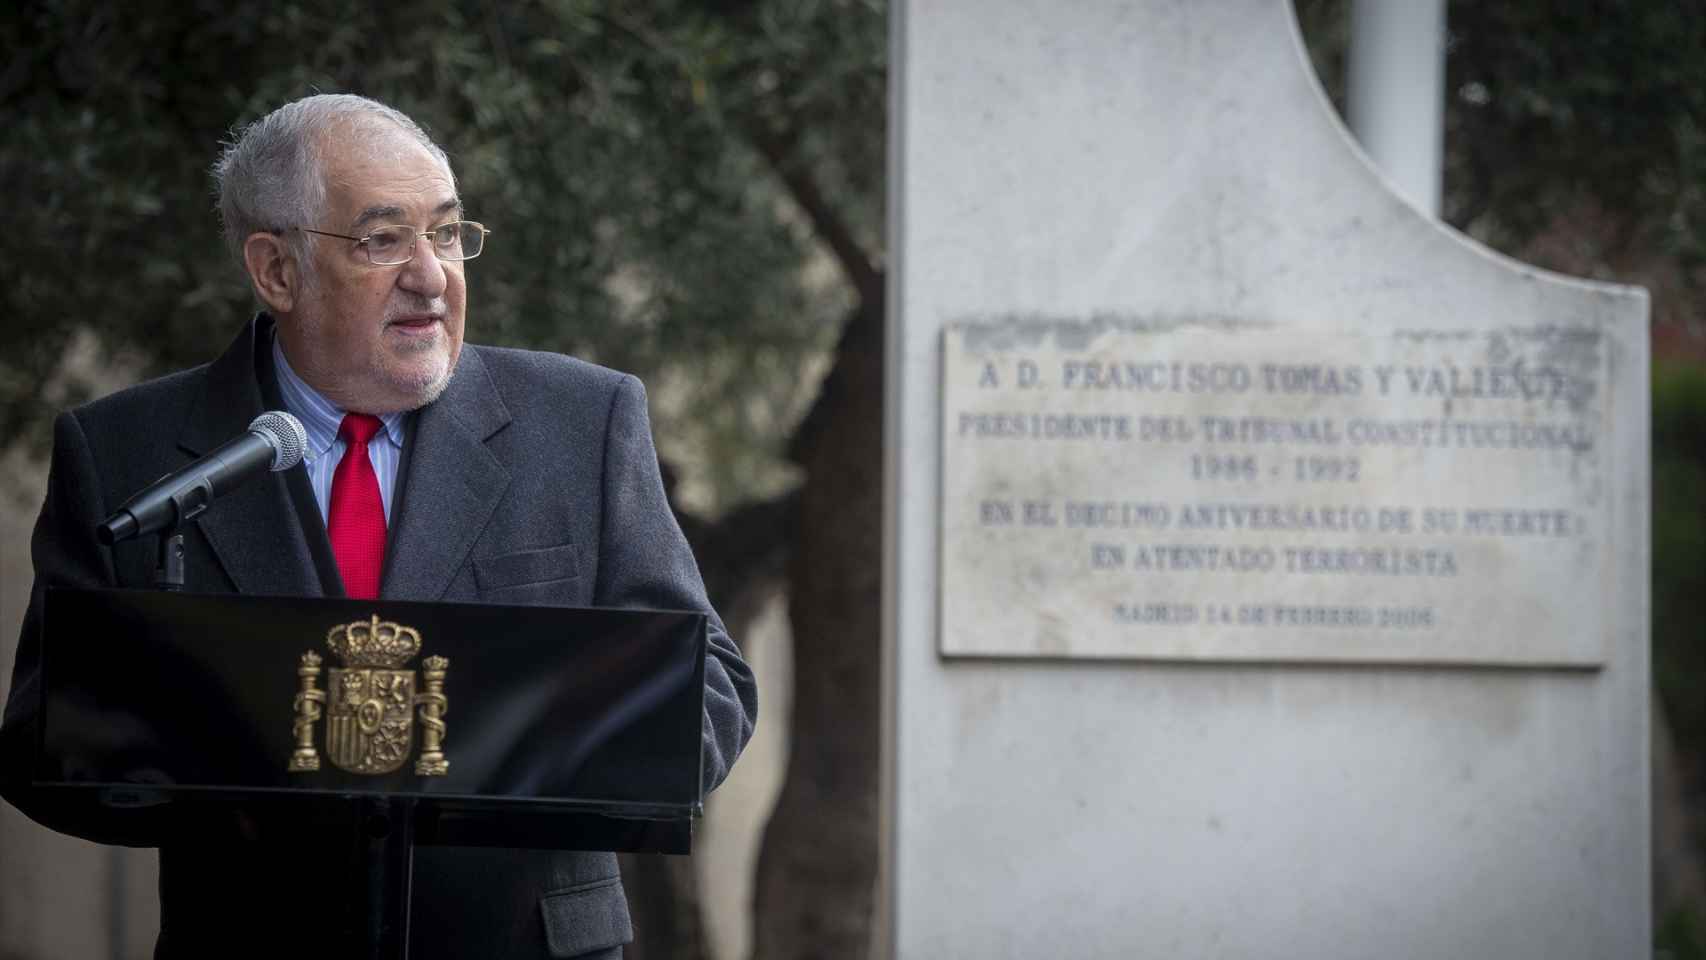 El presidente del TC, el 14 de febrero en el homenaje a Tomás y Valiente al cumplirse el 25 aniversario de su asesinato por ETA./